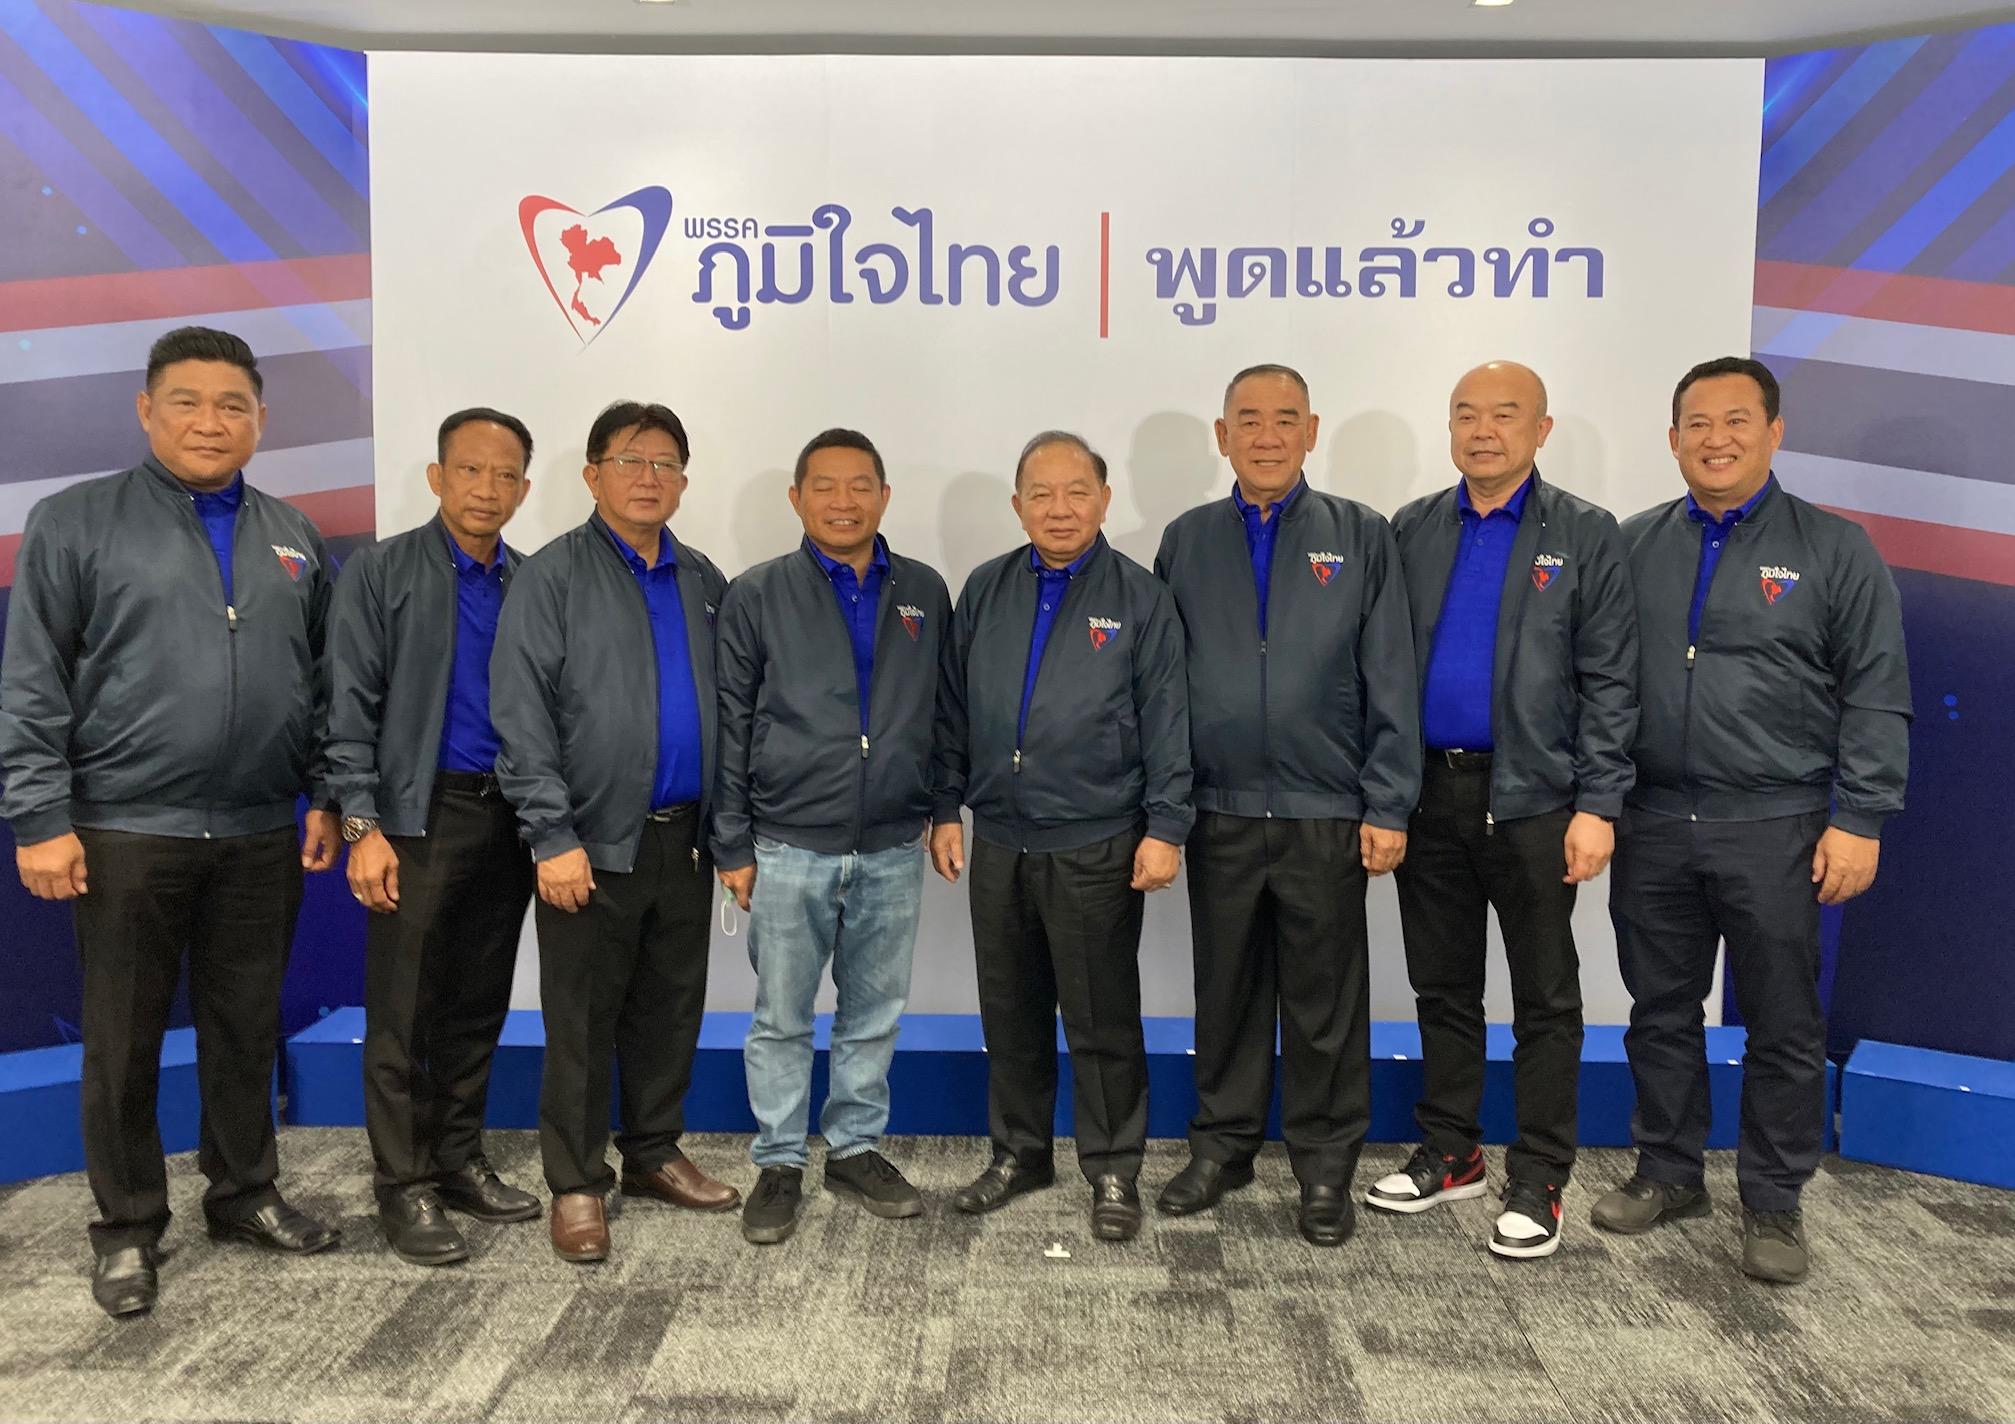 อดีต ส.ส. เพื่อไทย 8 คนถ่ายภาพหมู่ร่วมกัน ภายใต้เสื้อภูมิใจไทย